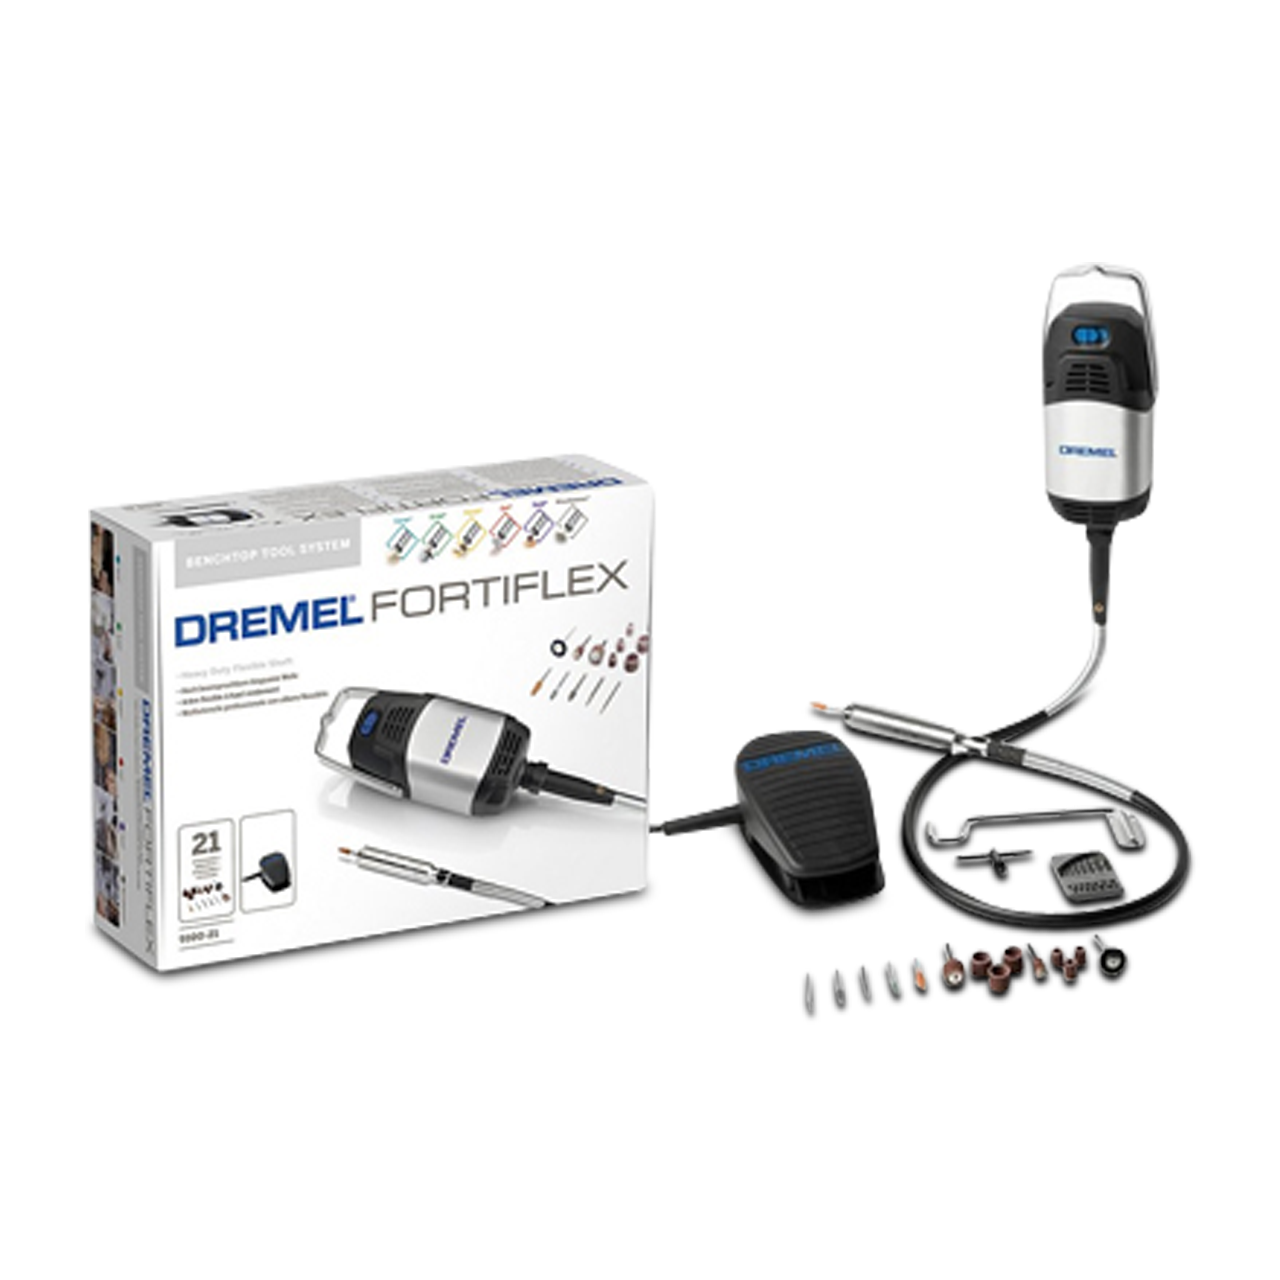 Dremel 9100-21 Forti-Flex Shaft Tool Kit, 2.5 A